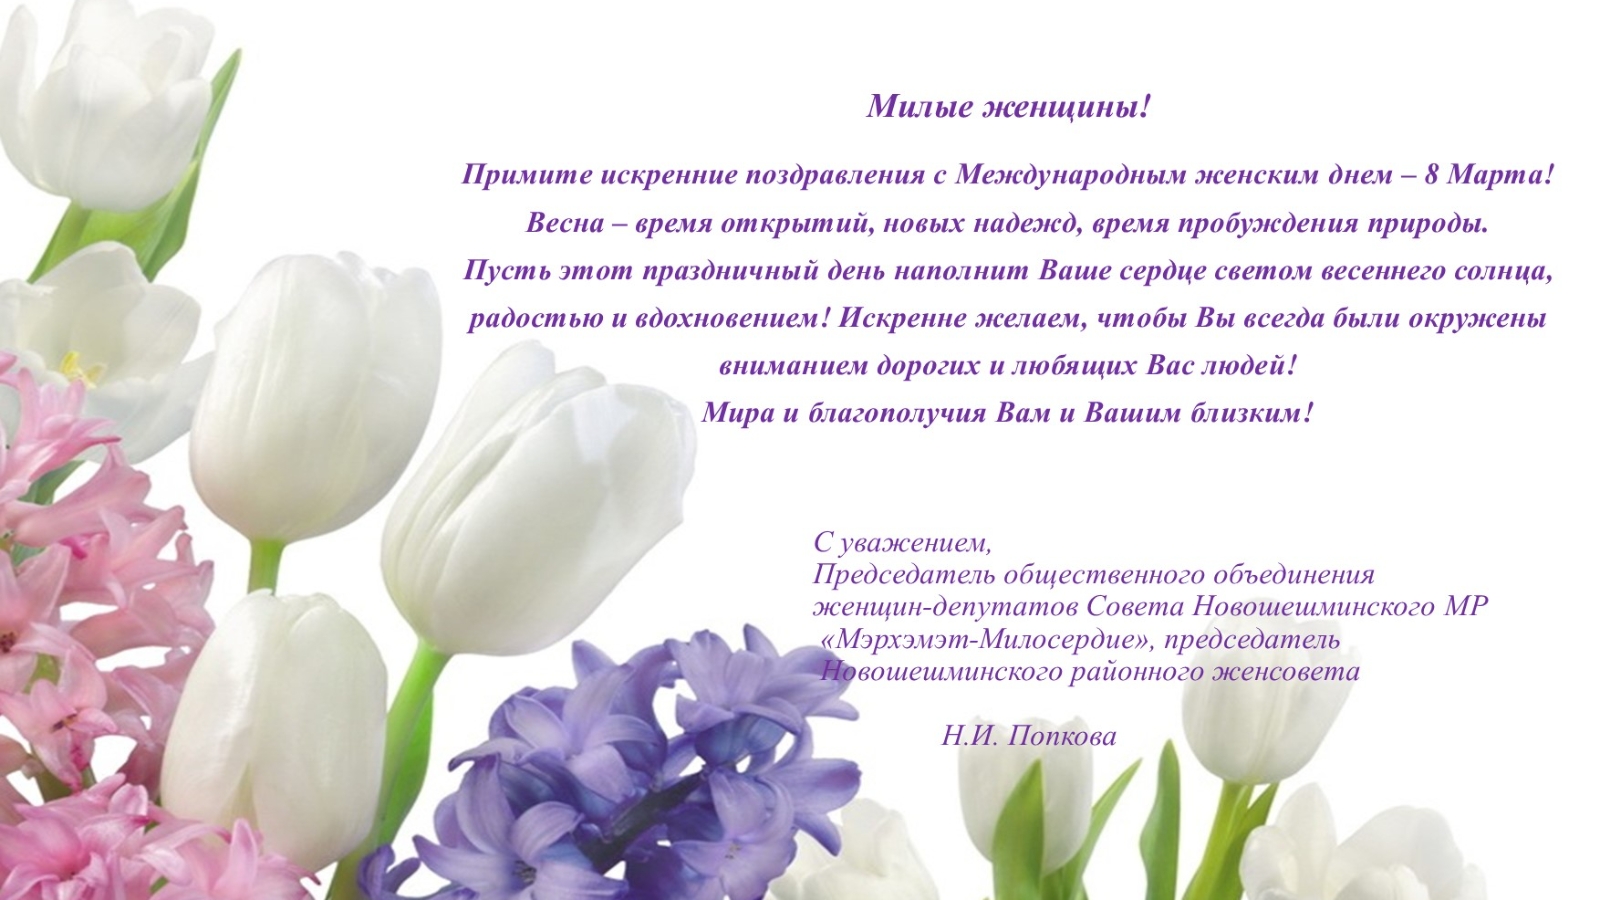 Поздравление женщинам россии. С международным женским днем поздравления. Милые женщины уважаемые коллеги.